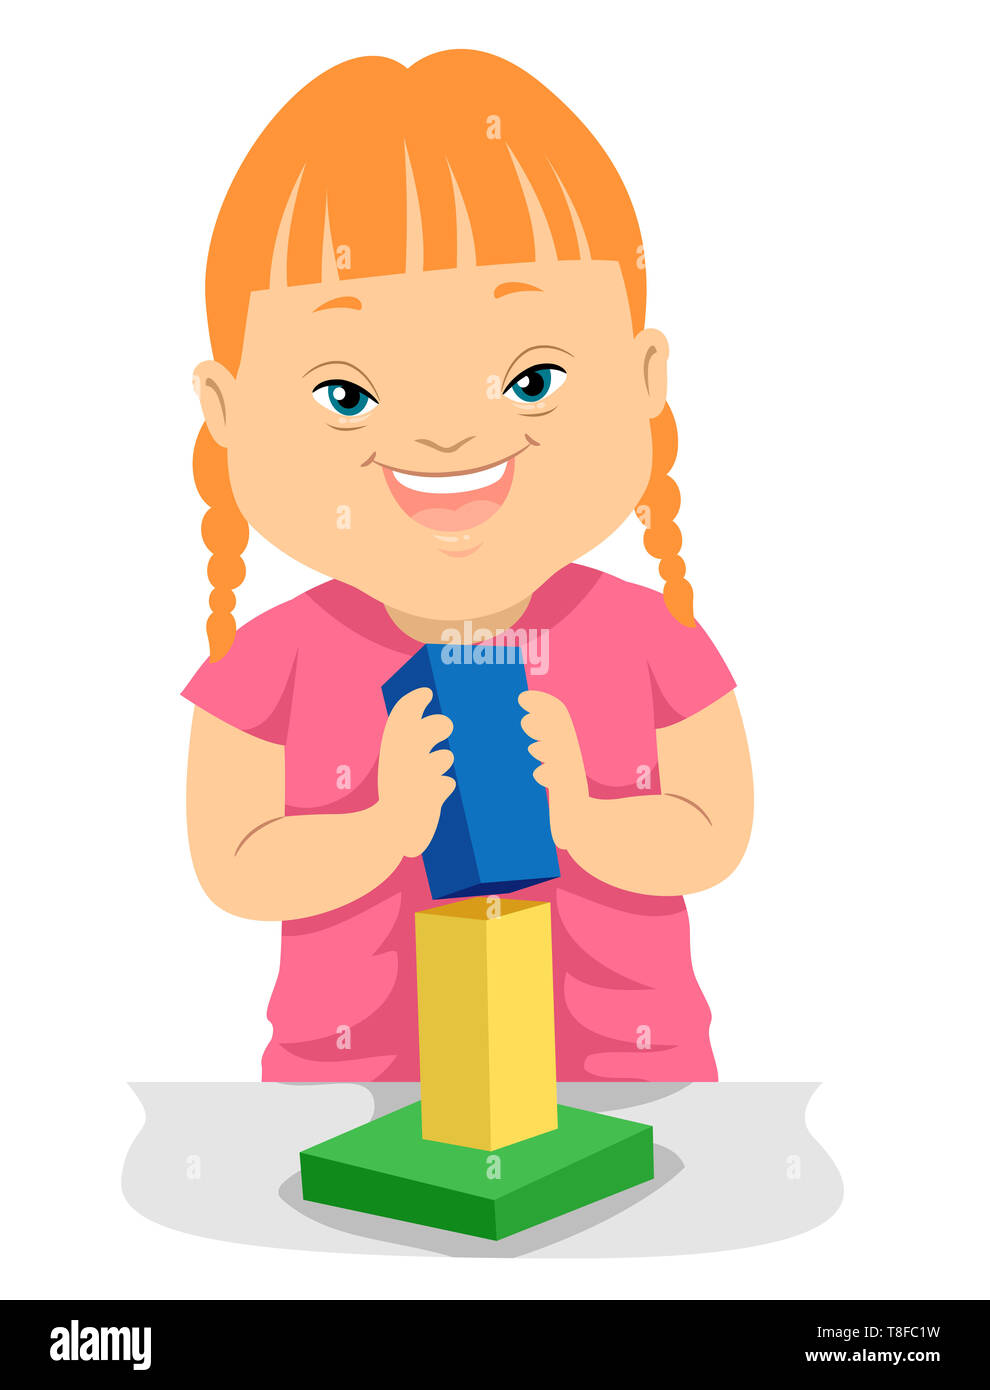 Ilustración de un chico chica con síndrome de Down jugando con bloques de  construcción Fotografía de stock - Alamy